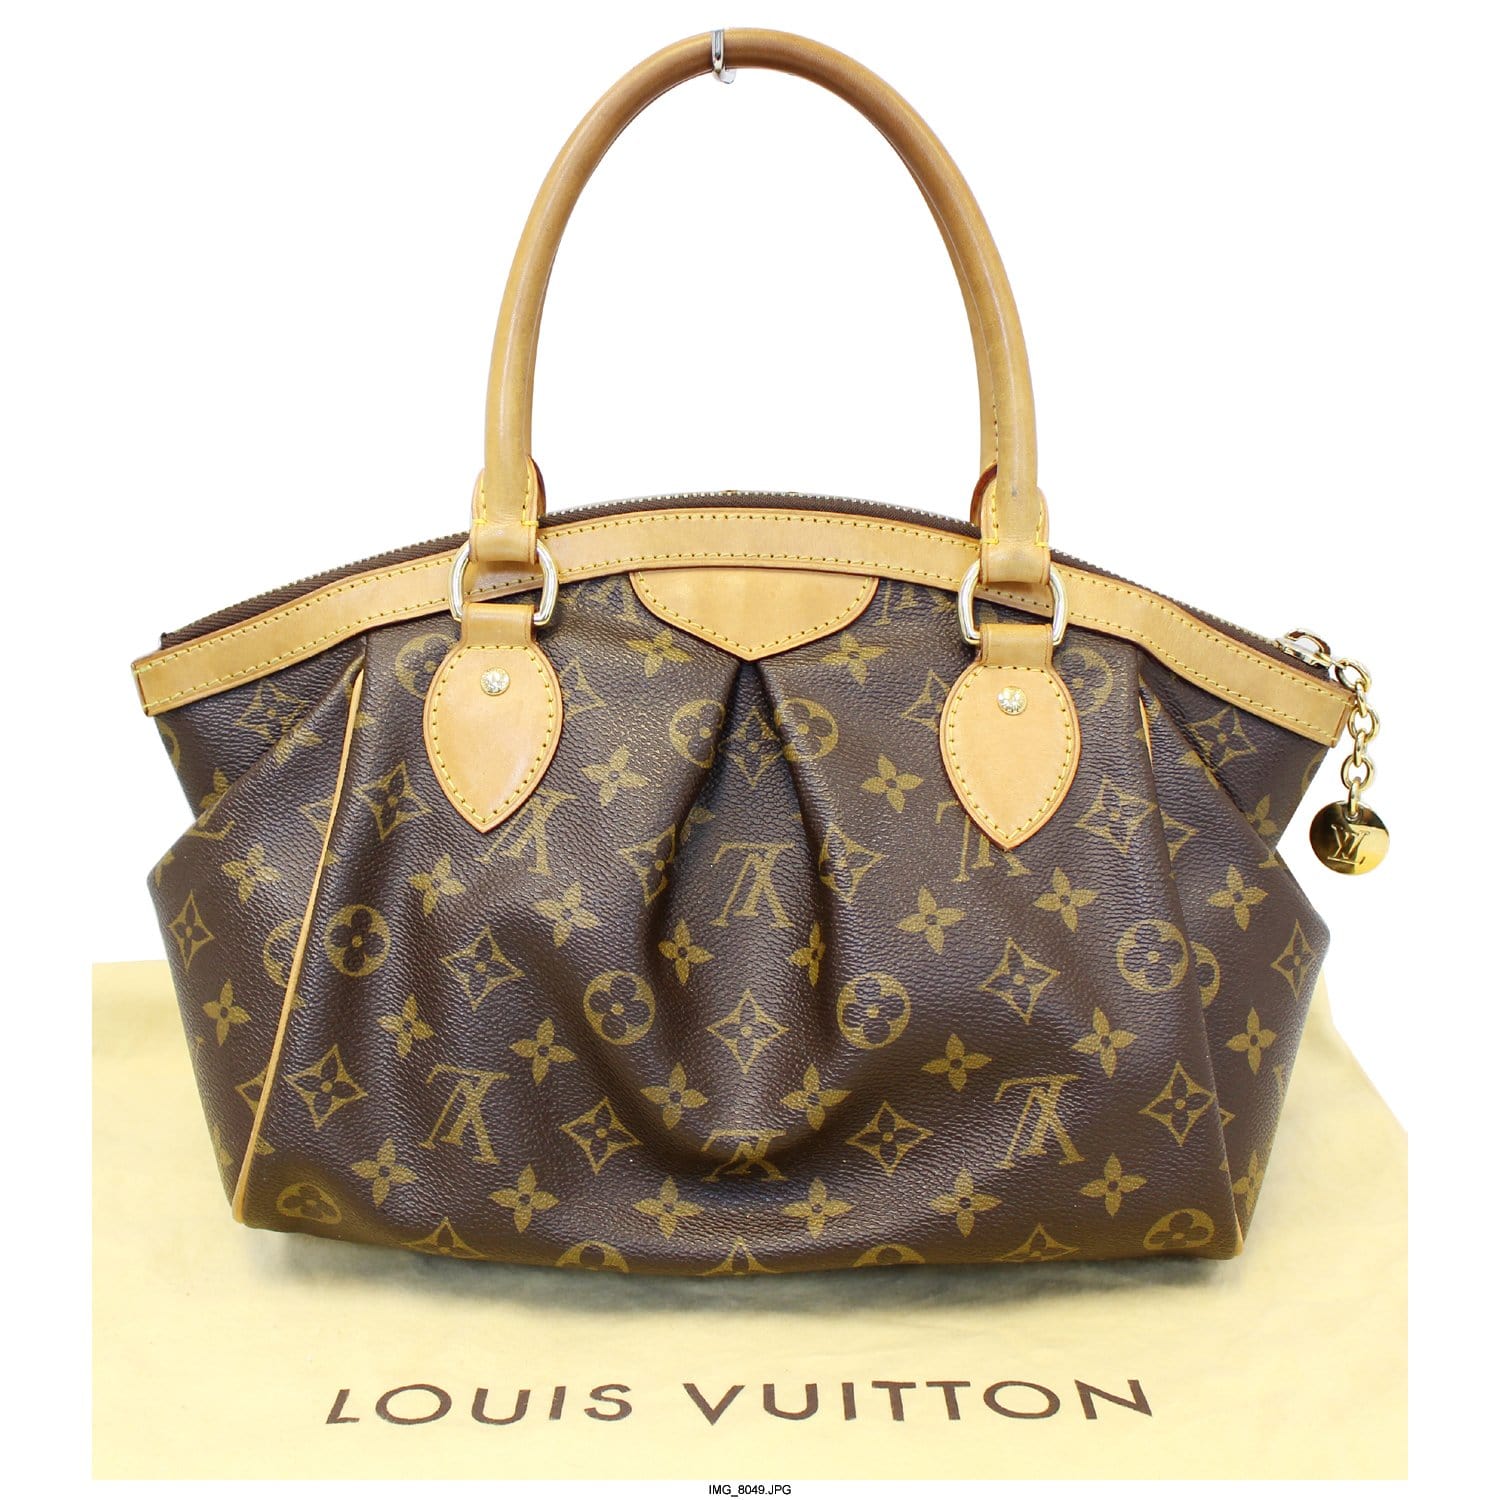 Louis Vuitton Tivoli PM Monogram Canvas Satchel Bag